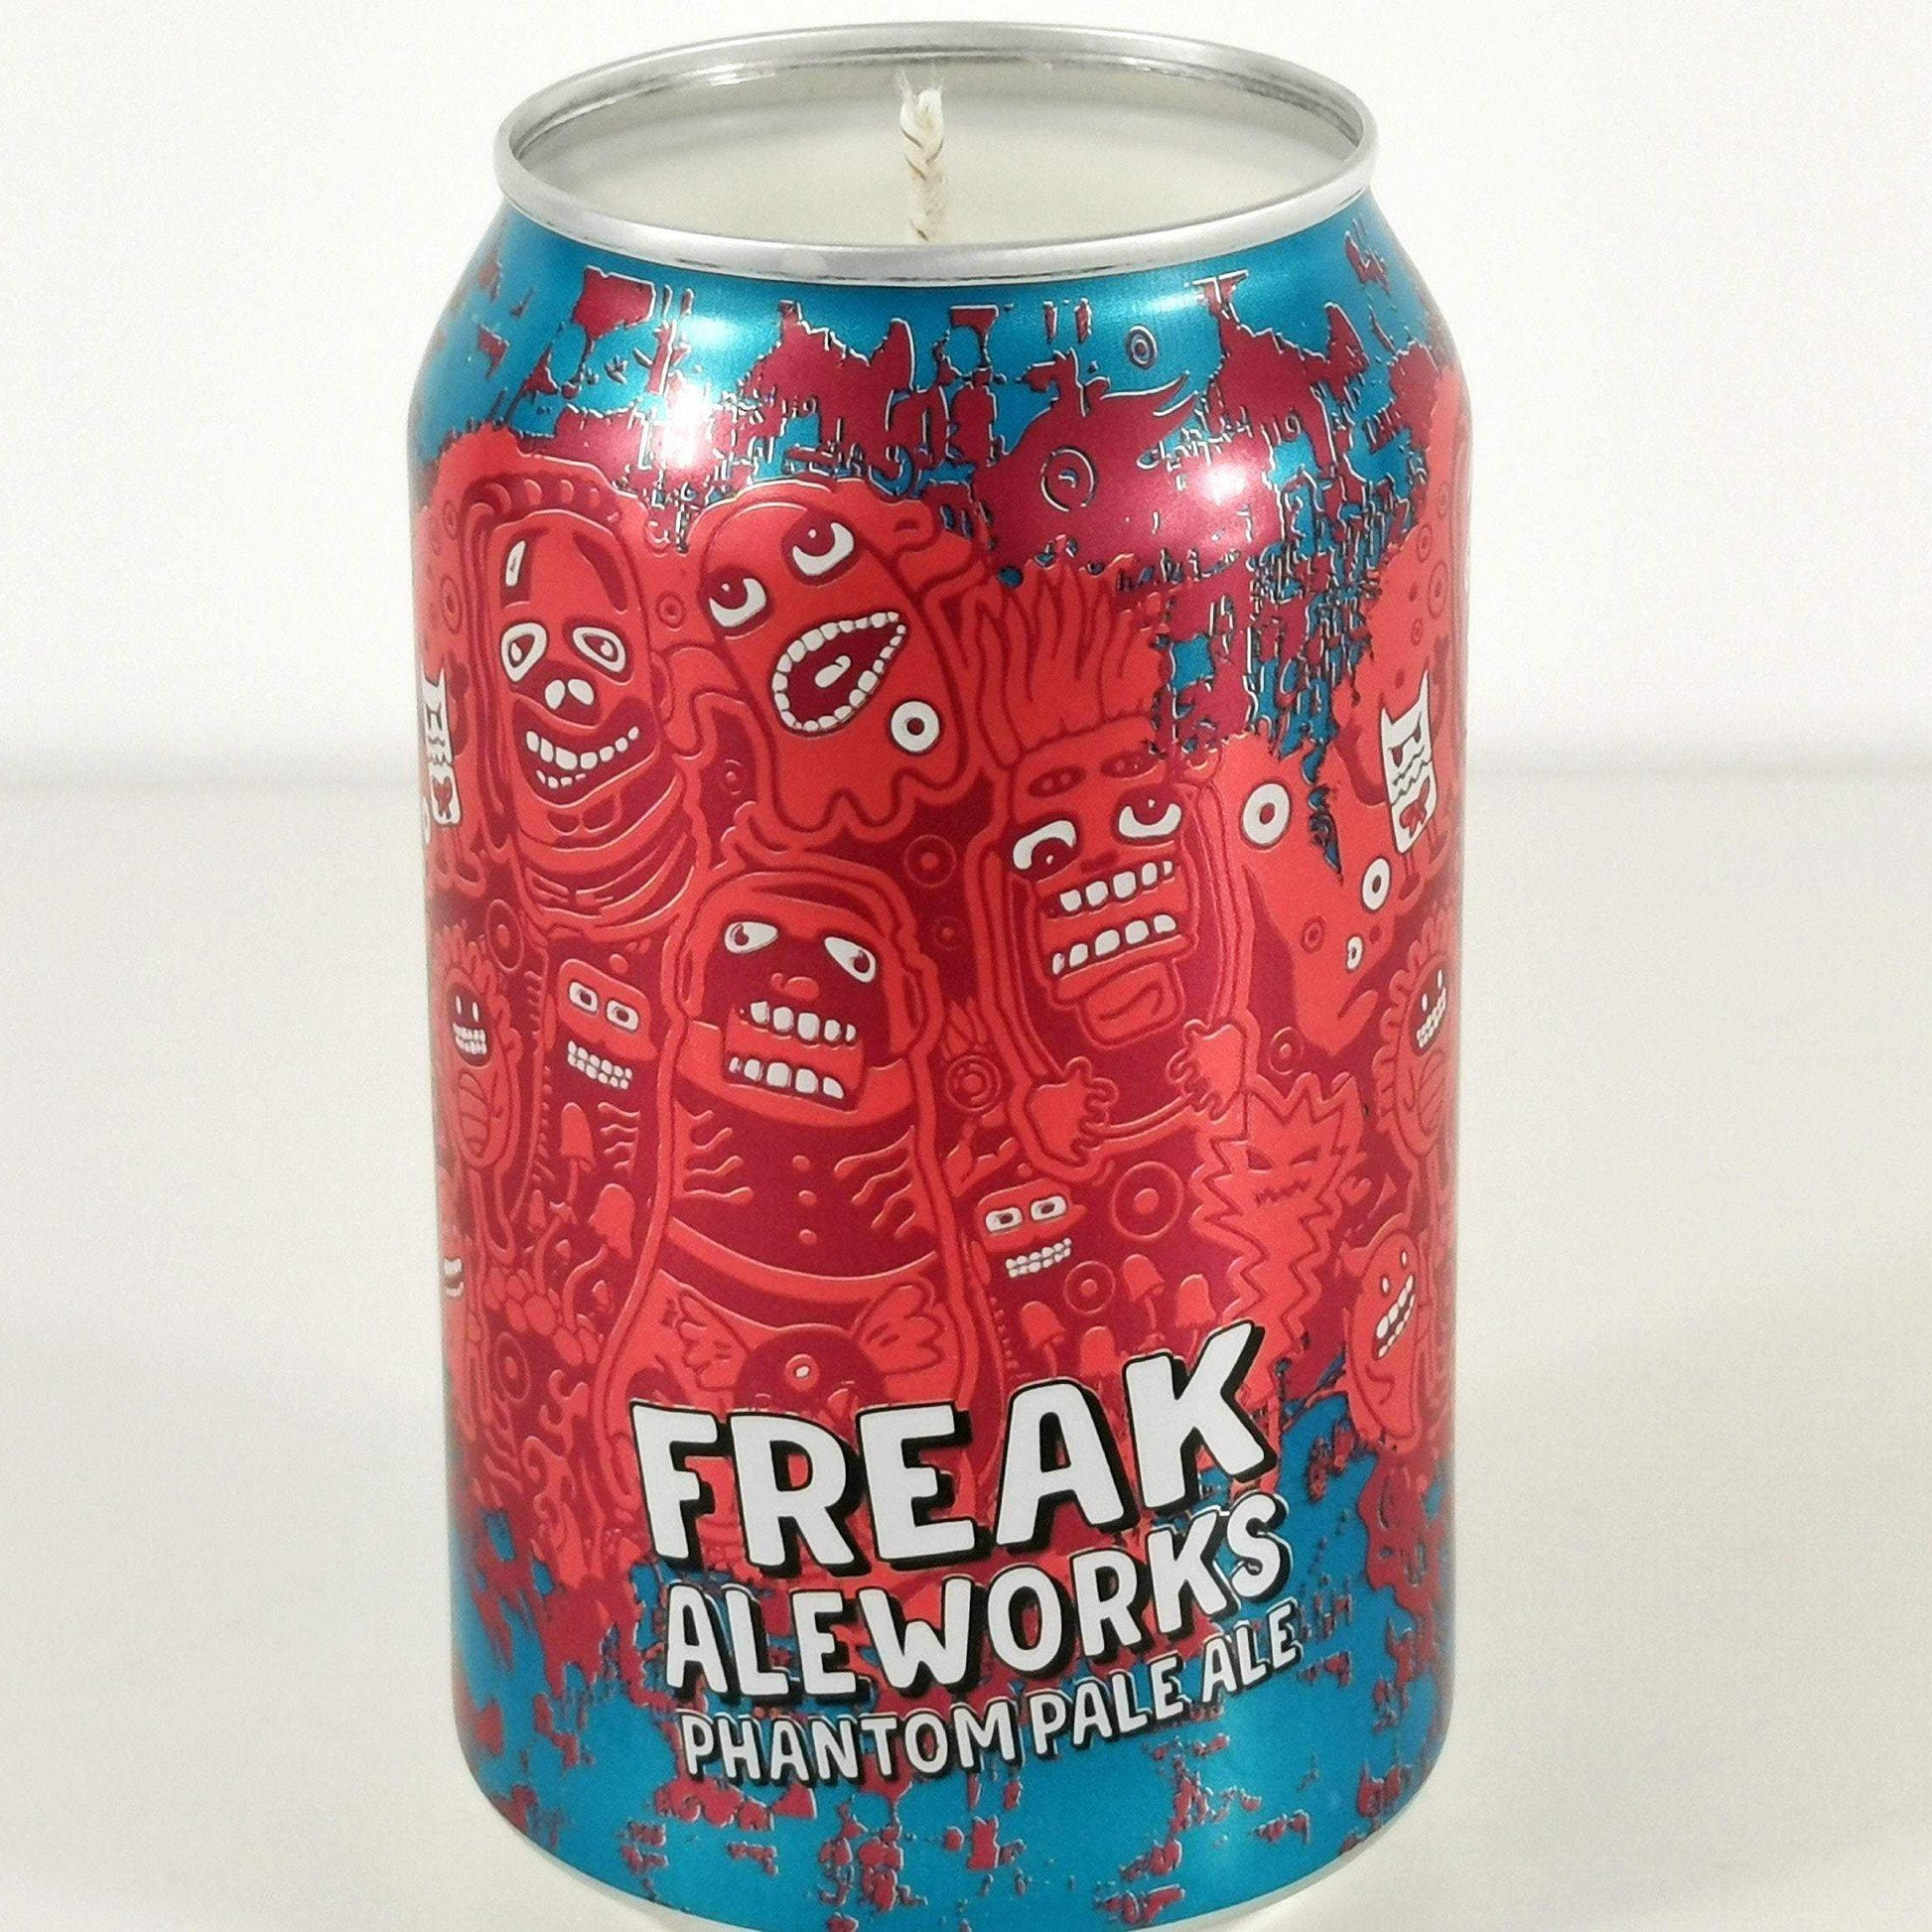 Freak Aleworks Phantom Pale Ale Craft Beer Can Candle Beer Can Candles Adhock Homeware